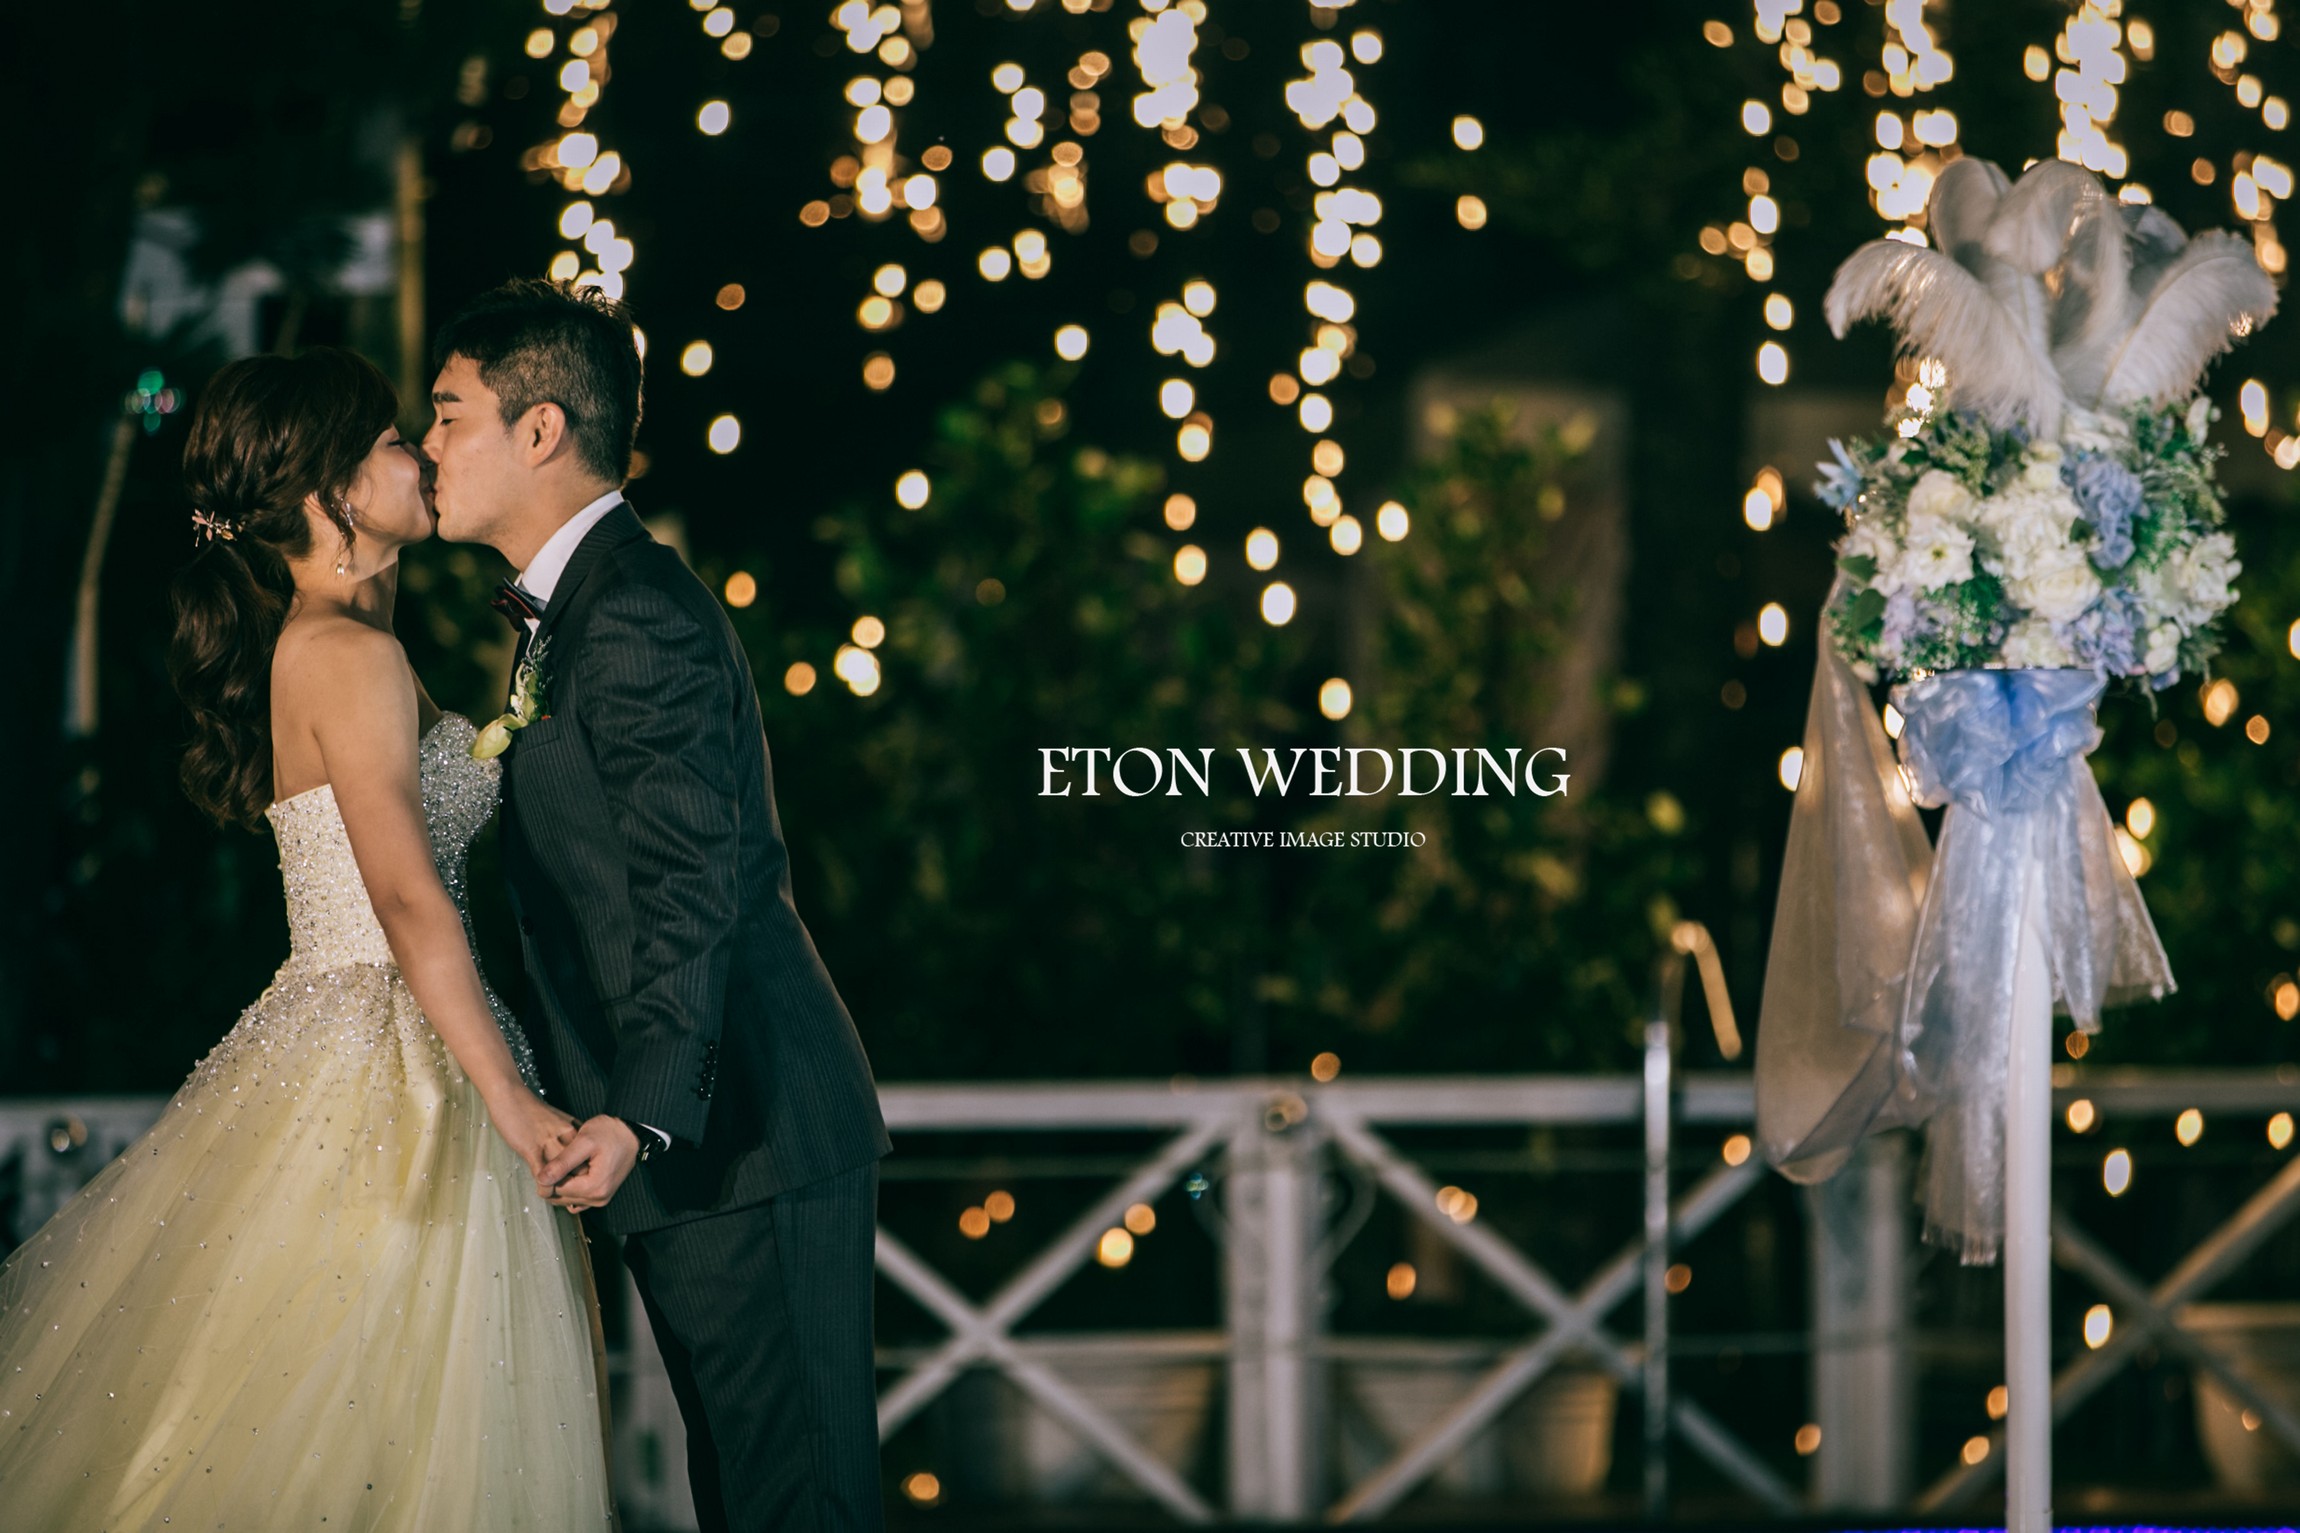 婚禮攝影 台南,婚禮記錄 台南,婚攝 台南,台南婚攝照,台南婚攝價格 